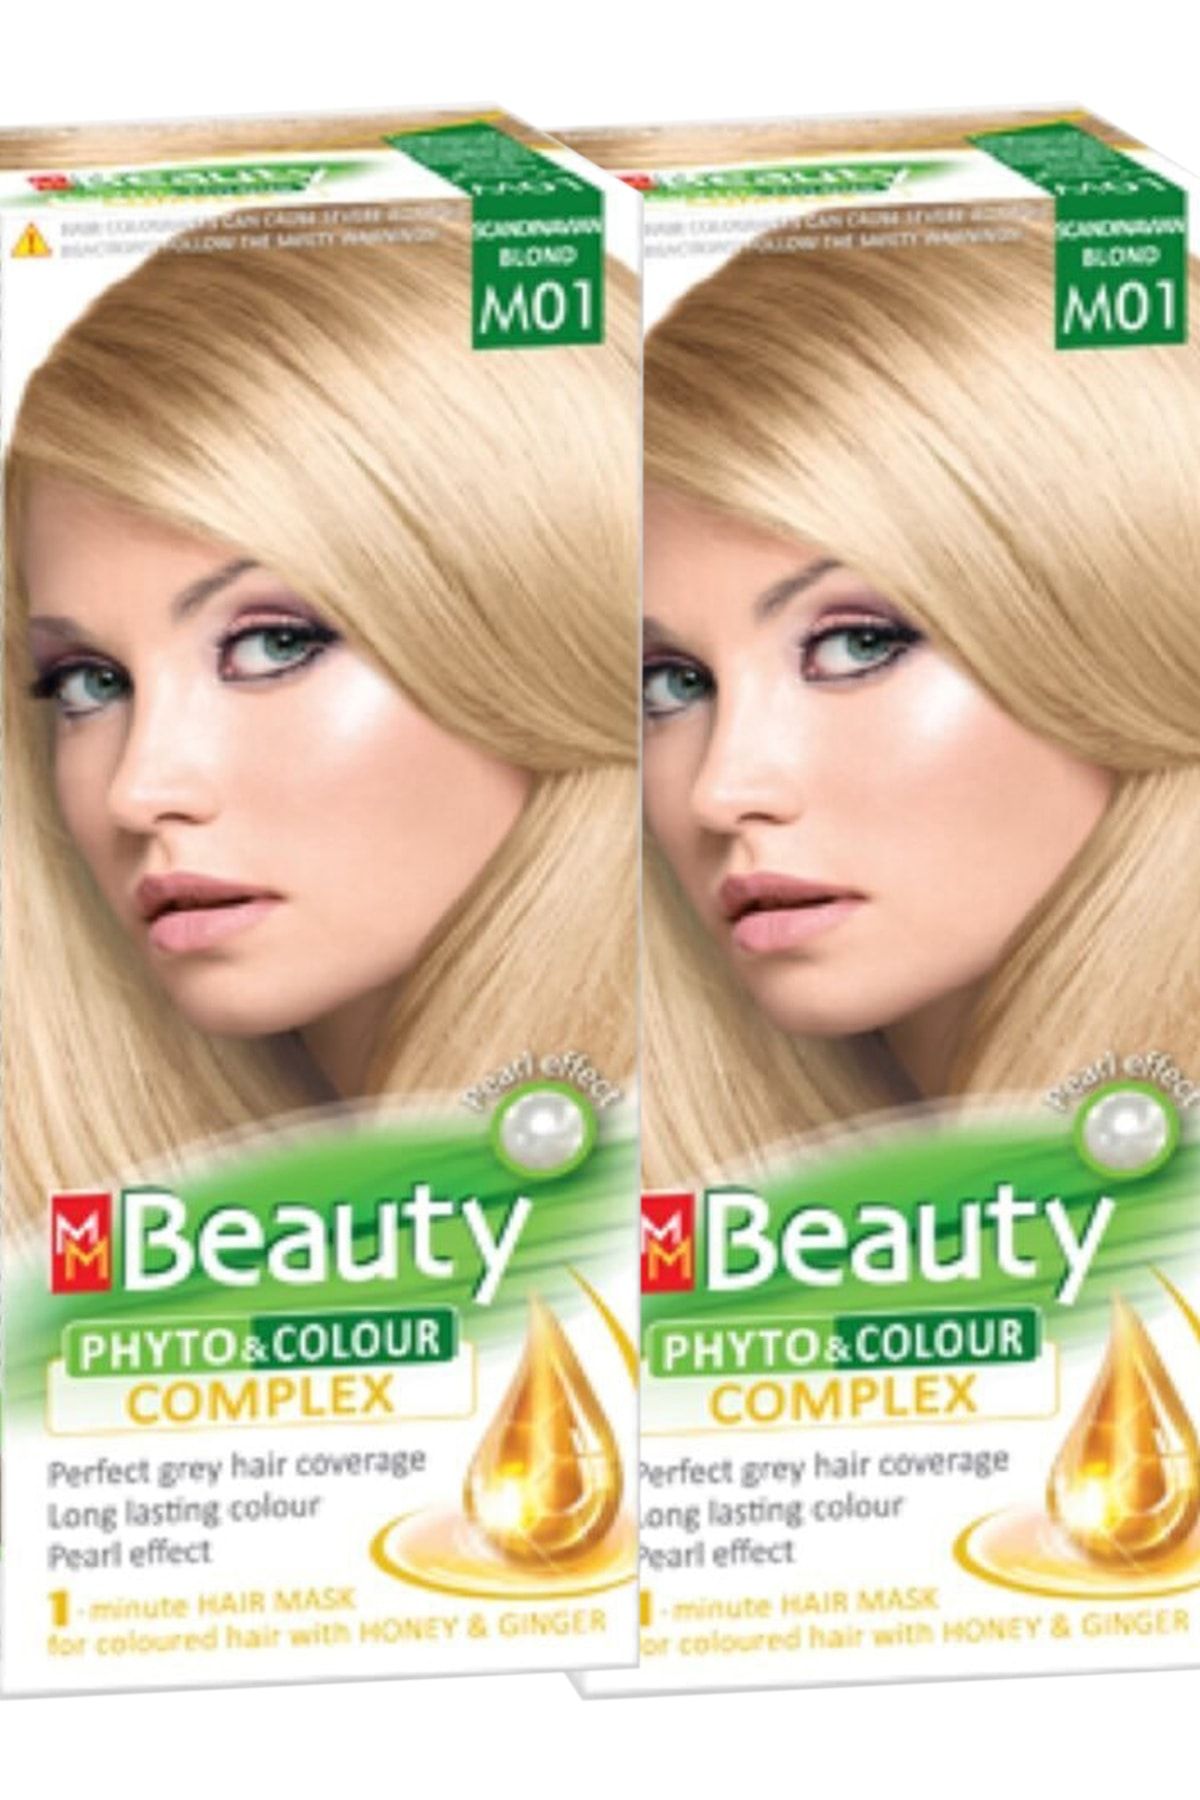 MM Beauty Saç Boyası M 01 ( Platin Kumral ) Set Boya 2'li Set